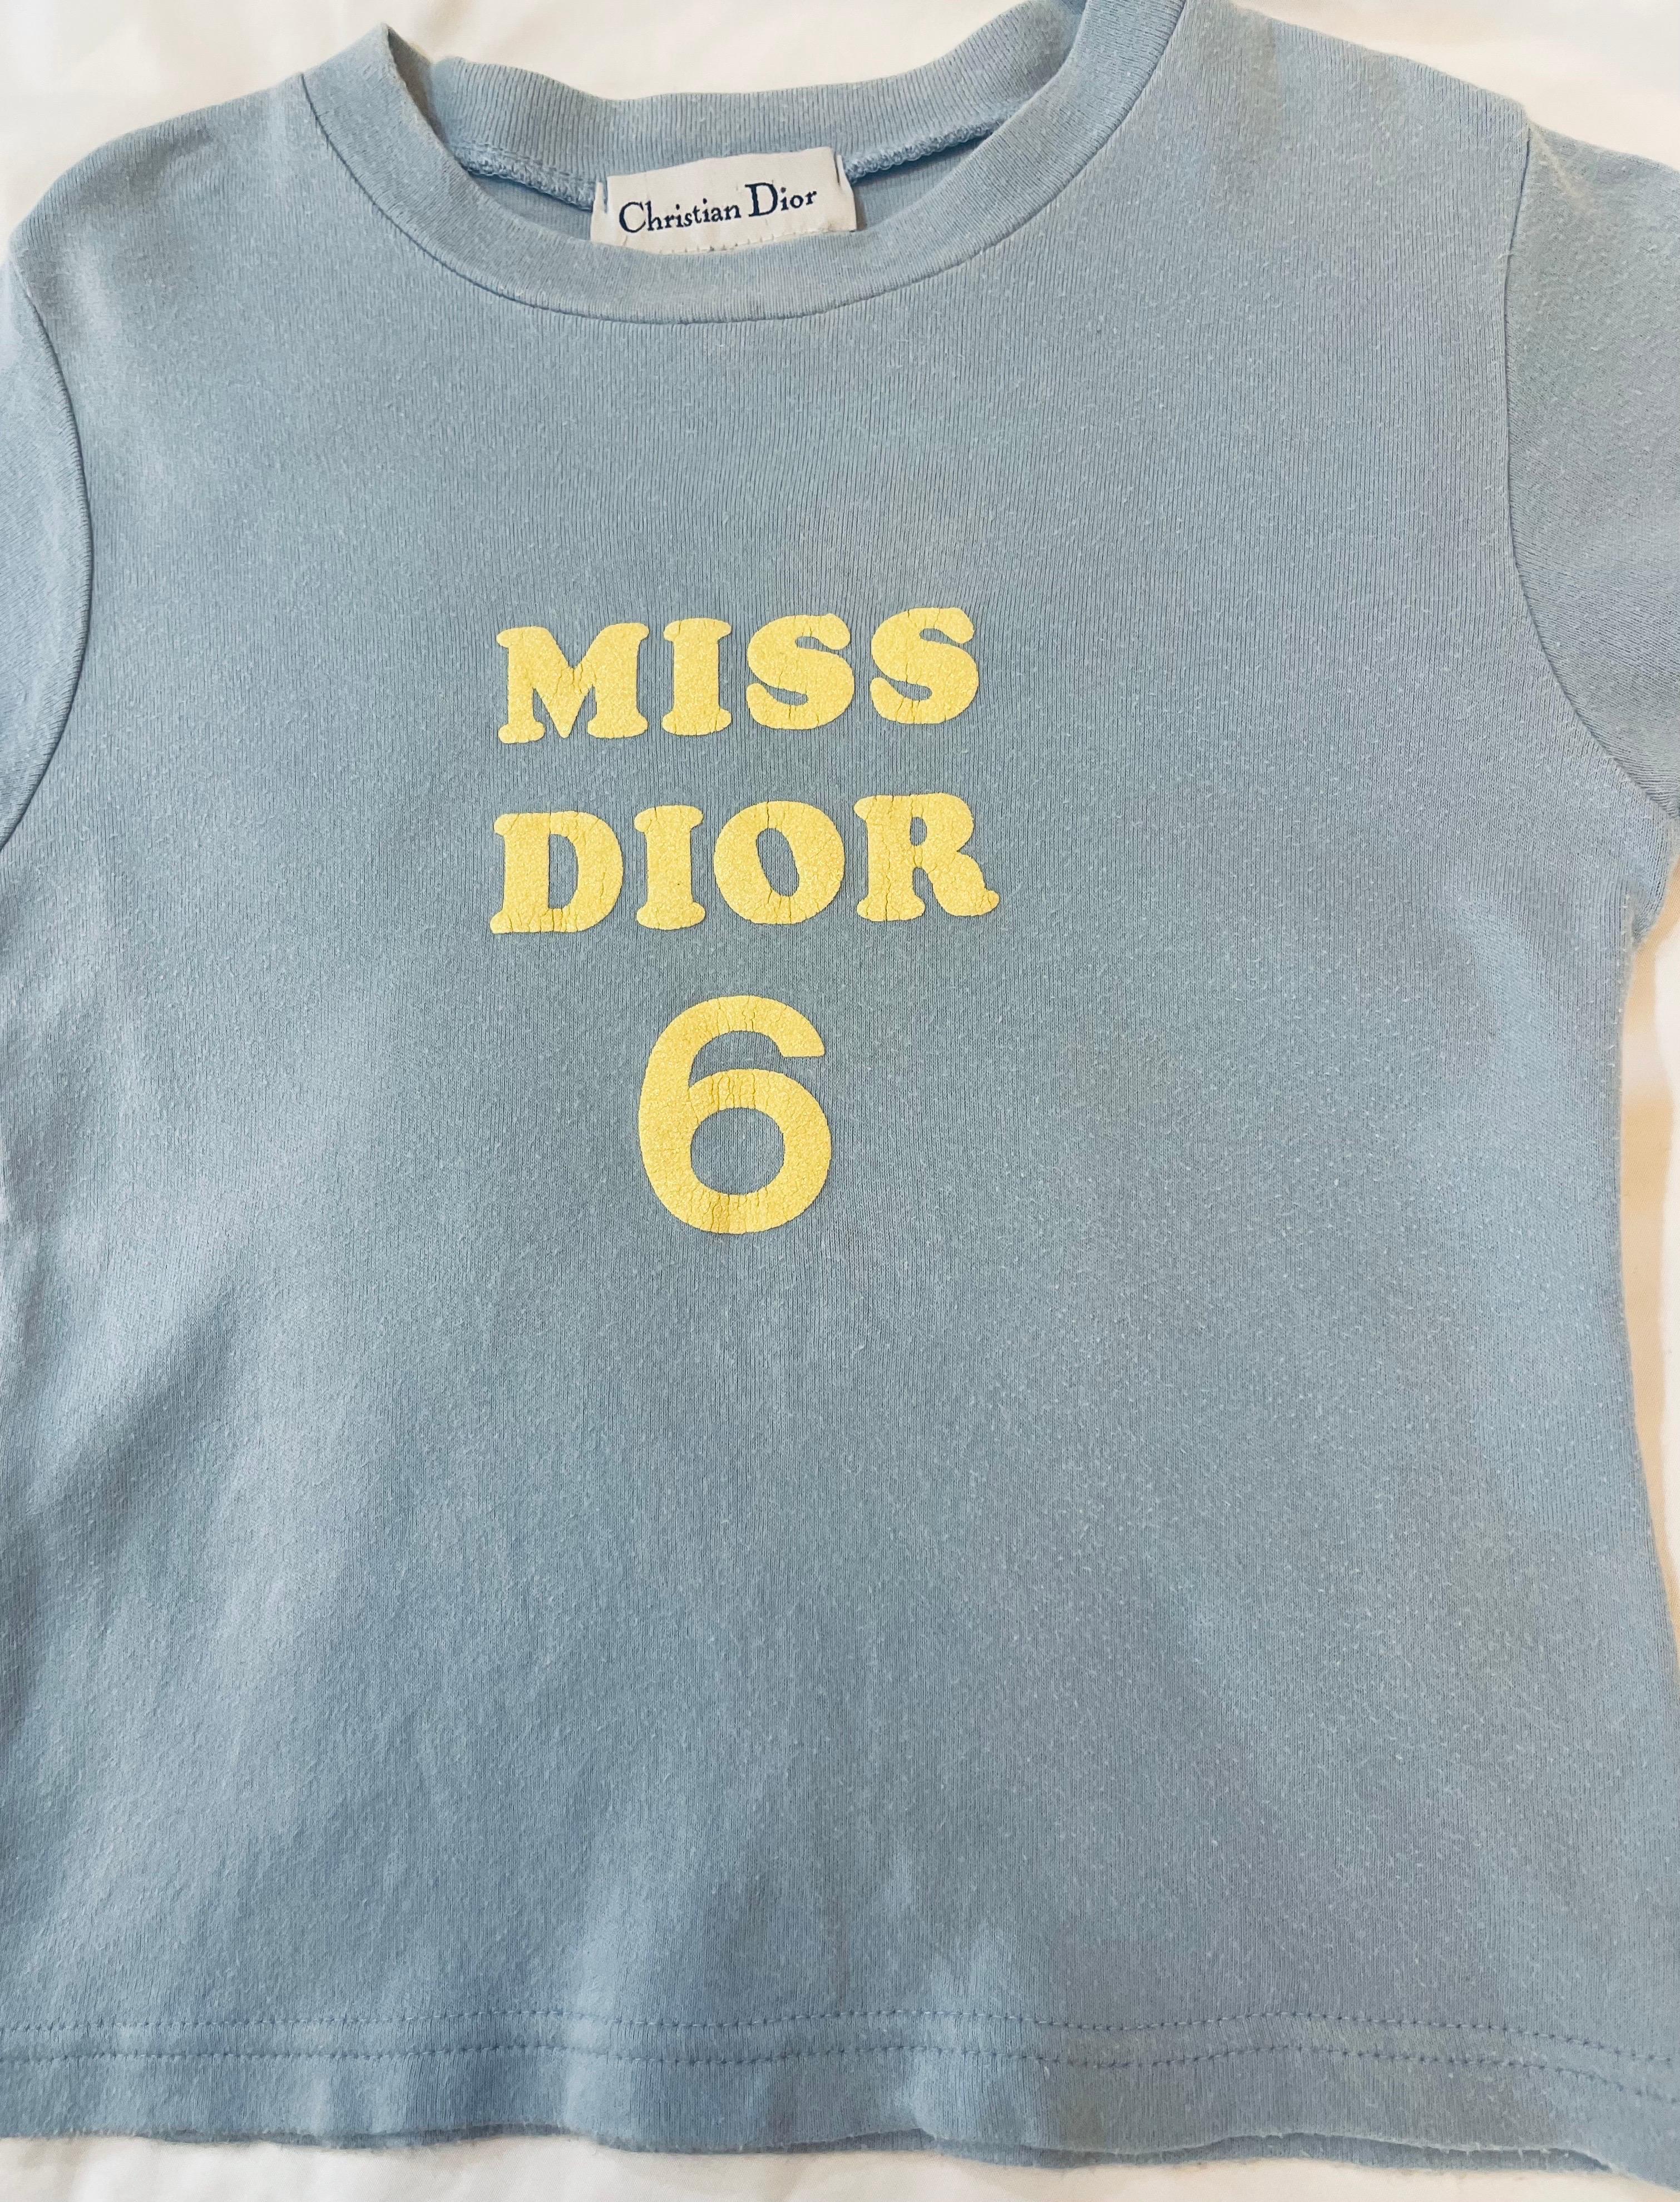 T-shirt vintage Christian Dior pour enfant, très cool, avec logo Miss Dior. Pièce très rare. Taille 6-8Y.